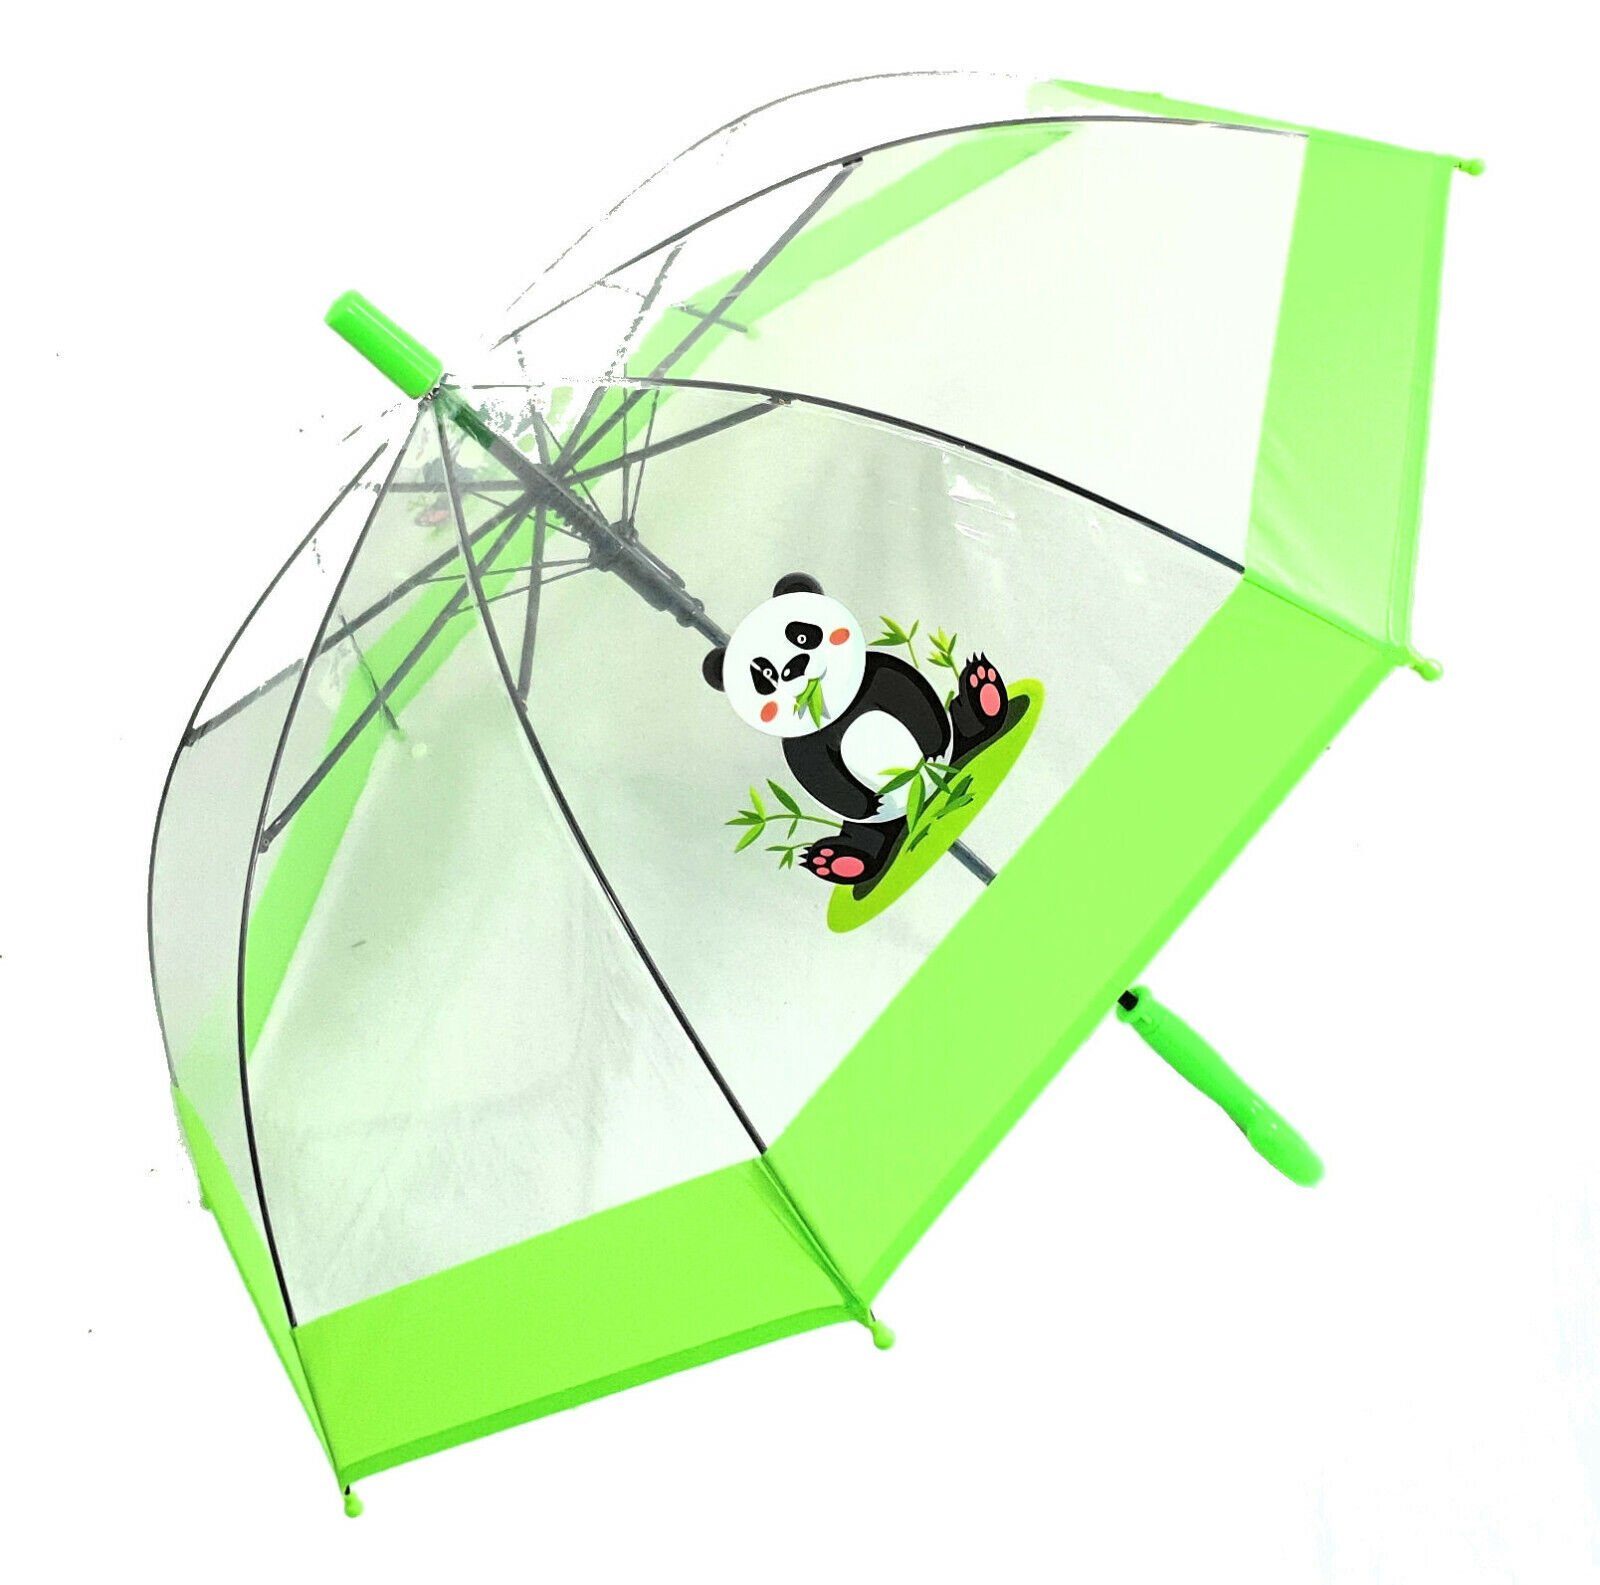 【Billig】 Dr. Neuser Stockregenschirm Kinder süßer Automatik, mit tranparent grün durchsichtig transparent Panda Regenschirm